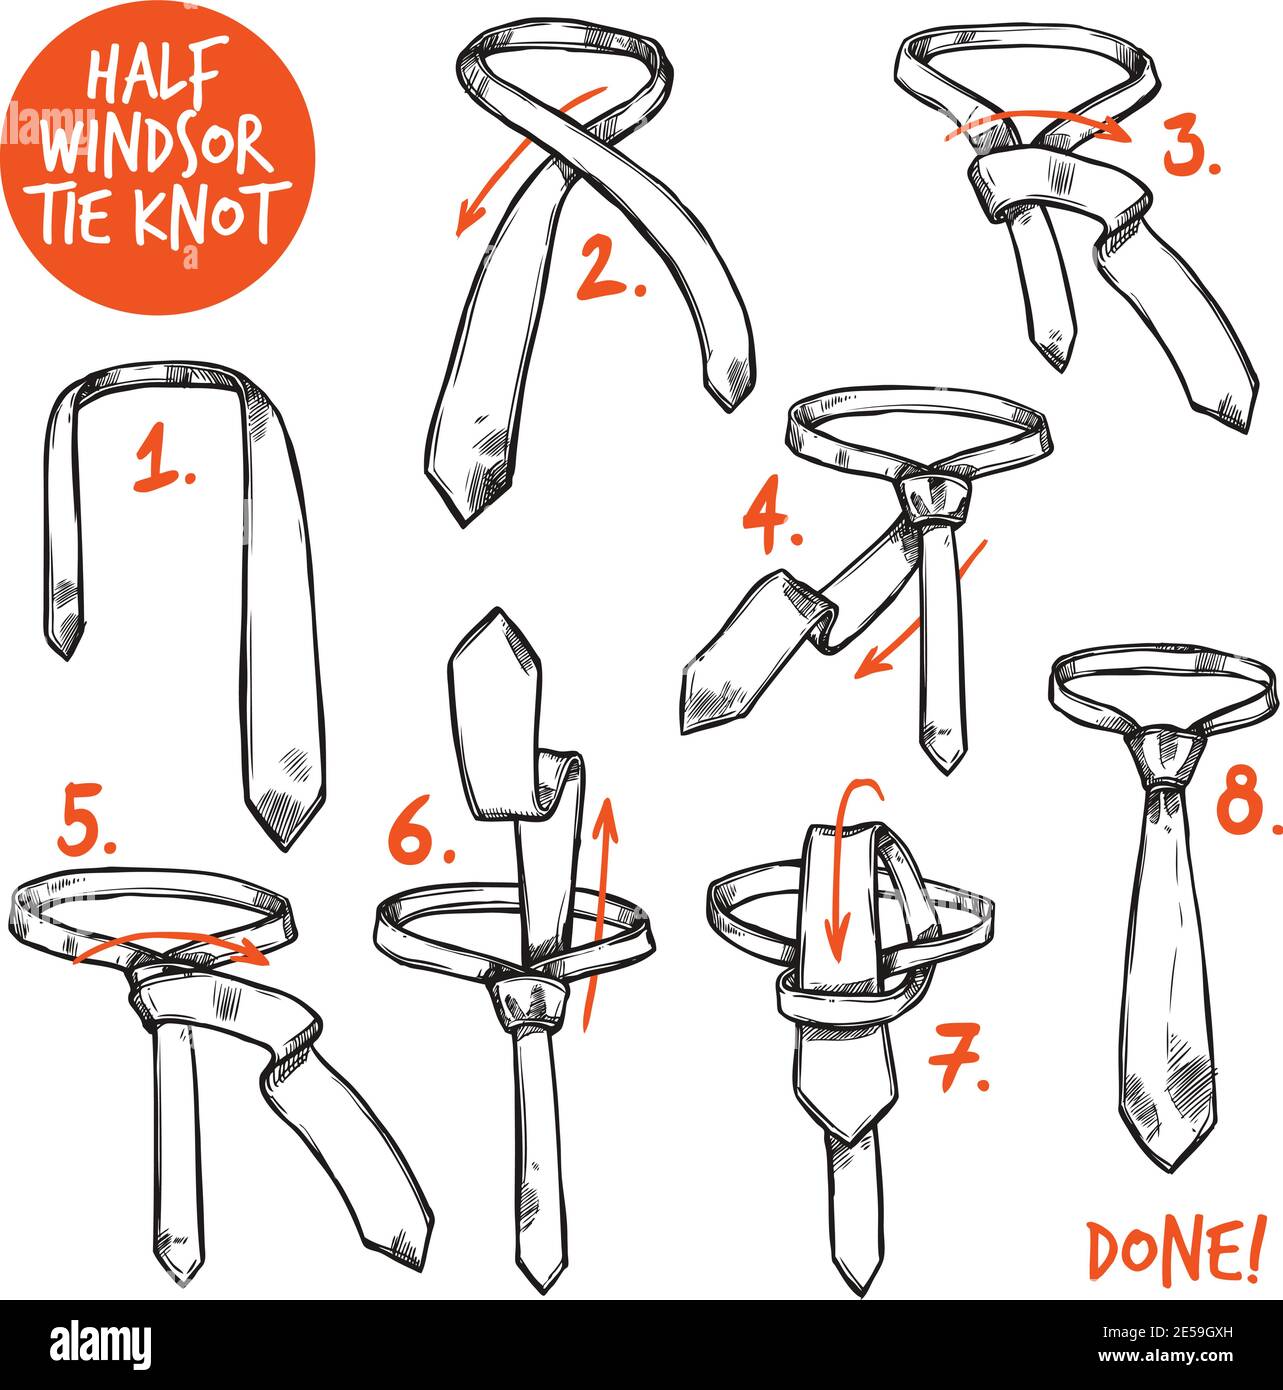 How to Tie a Half Windsor